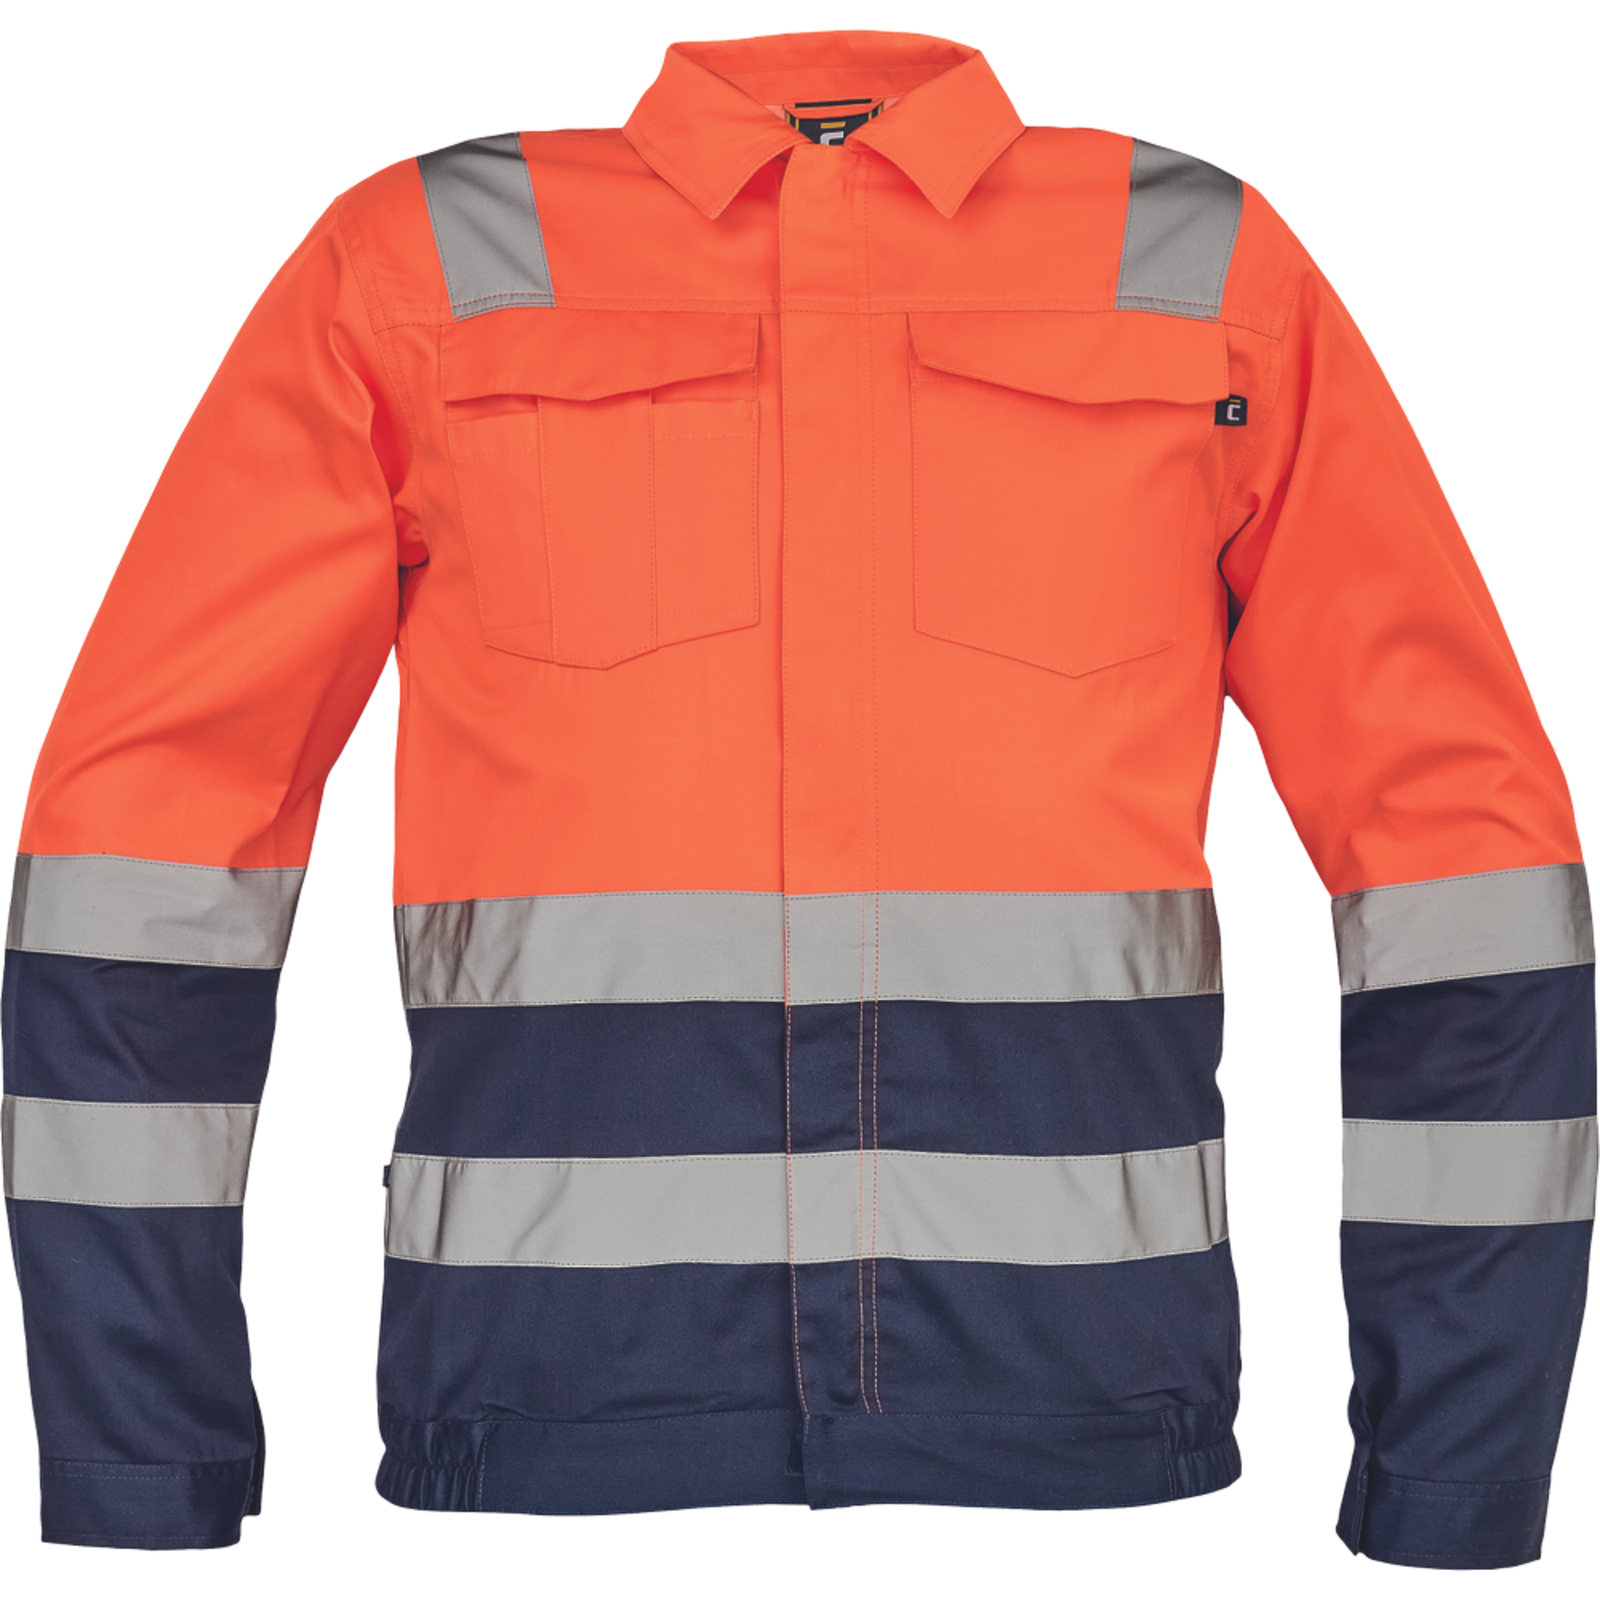 Reflexná pracovná bunda Cerva Valencia HV - veľkosť: 46, farba: oranžová/navy